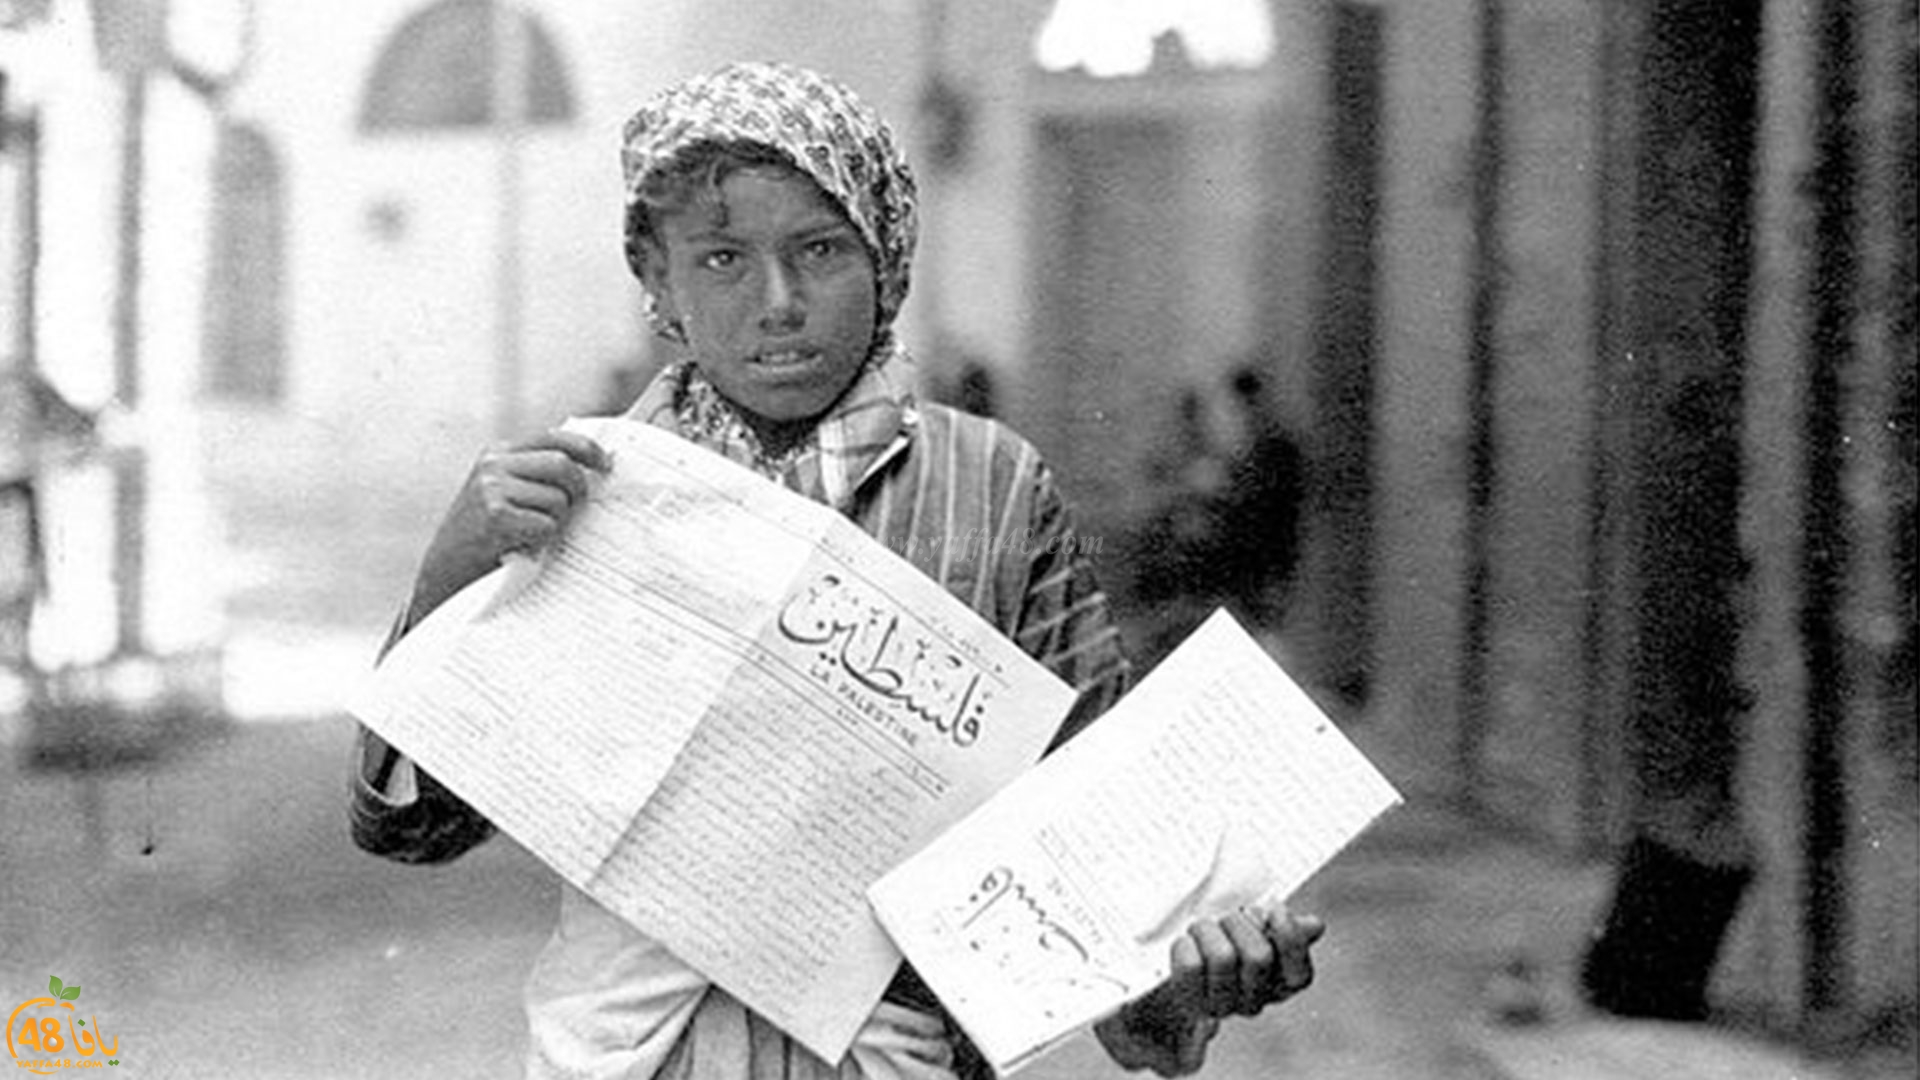 109 سنوات على تأسيس أول جريدة يافاوية فلسطين لصاحبها عيسى داوود العيسى